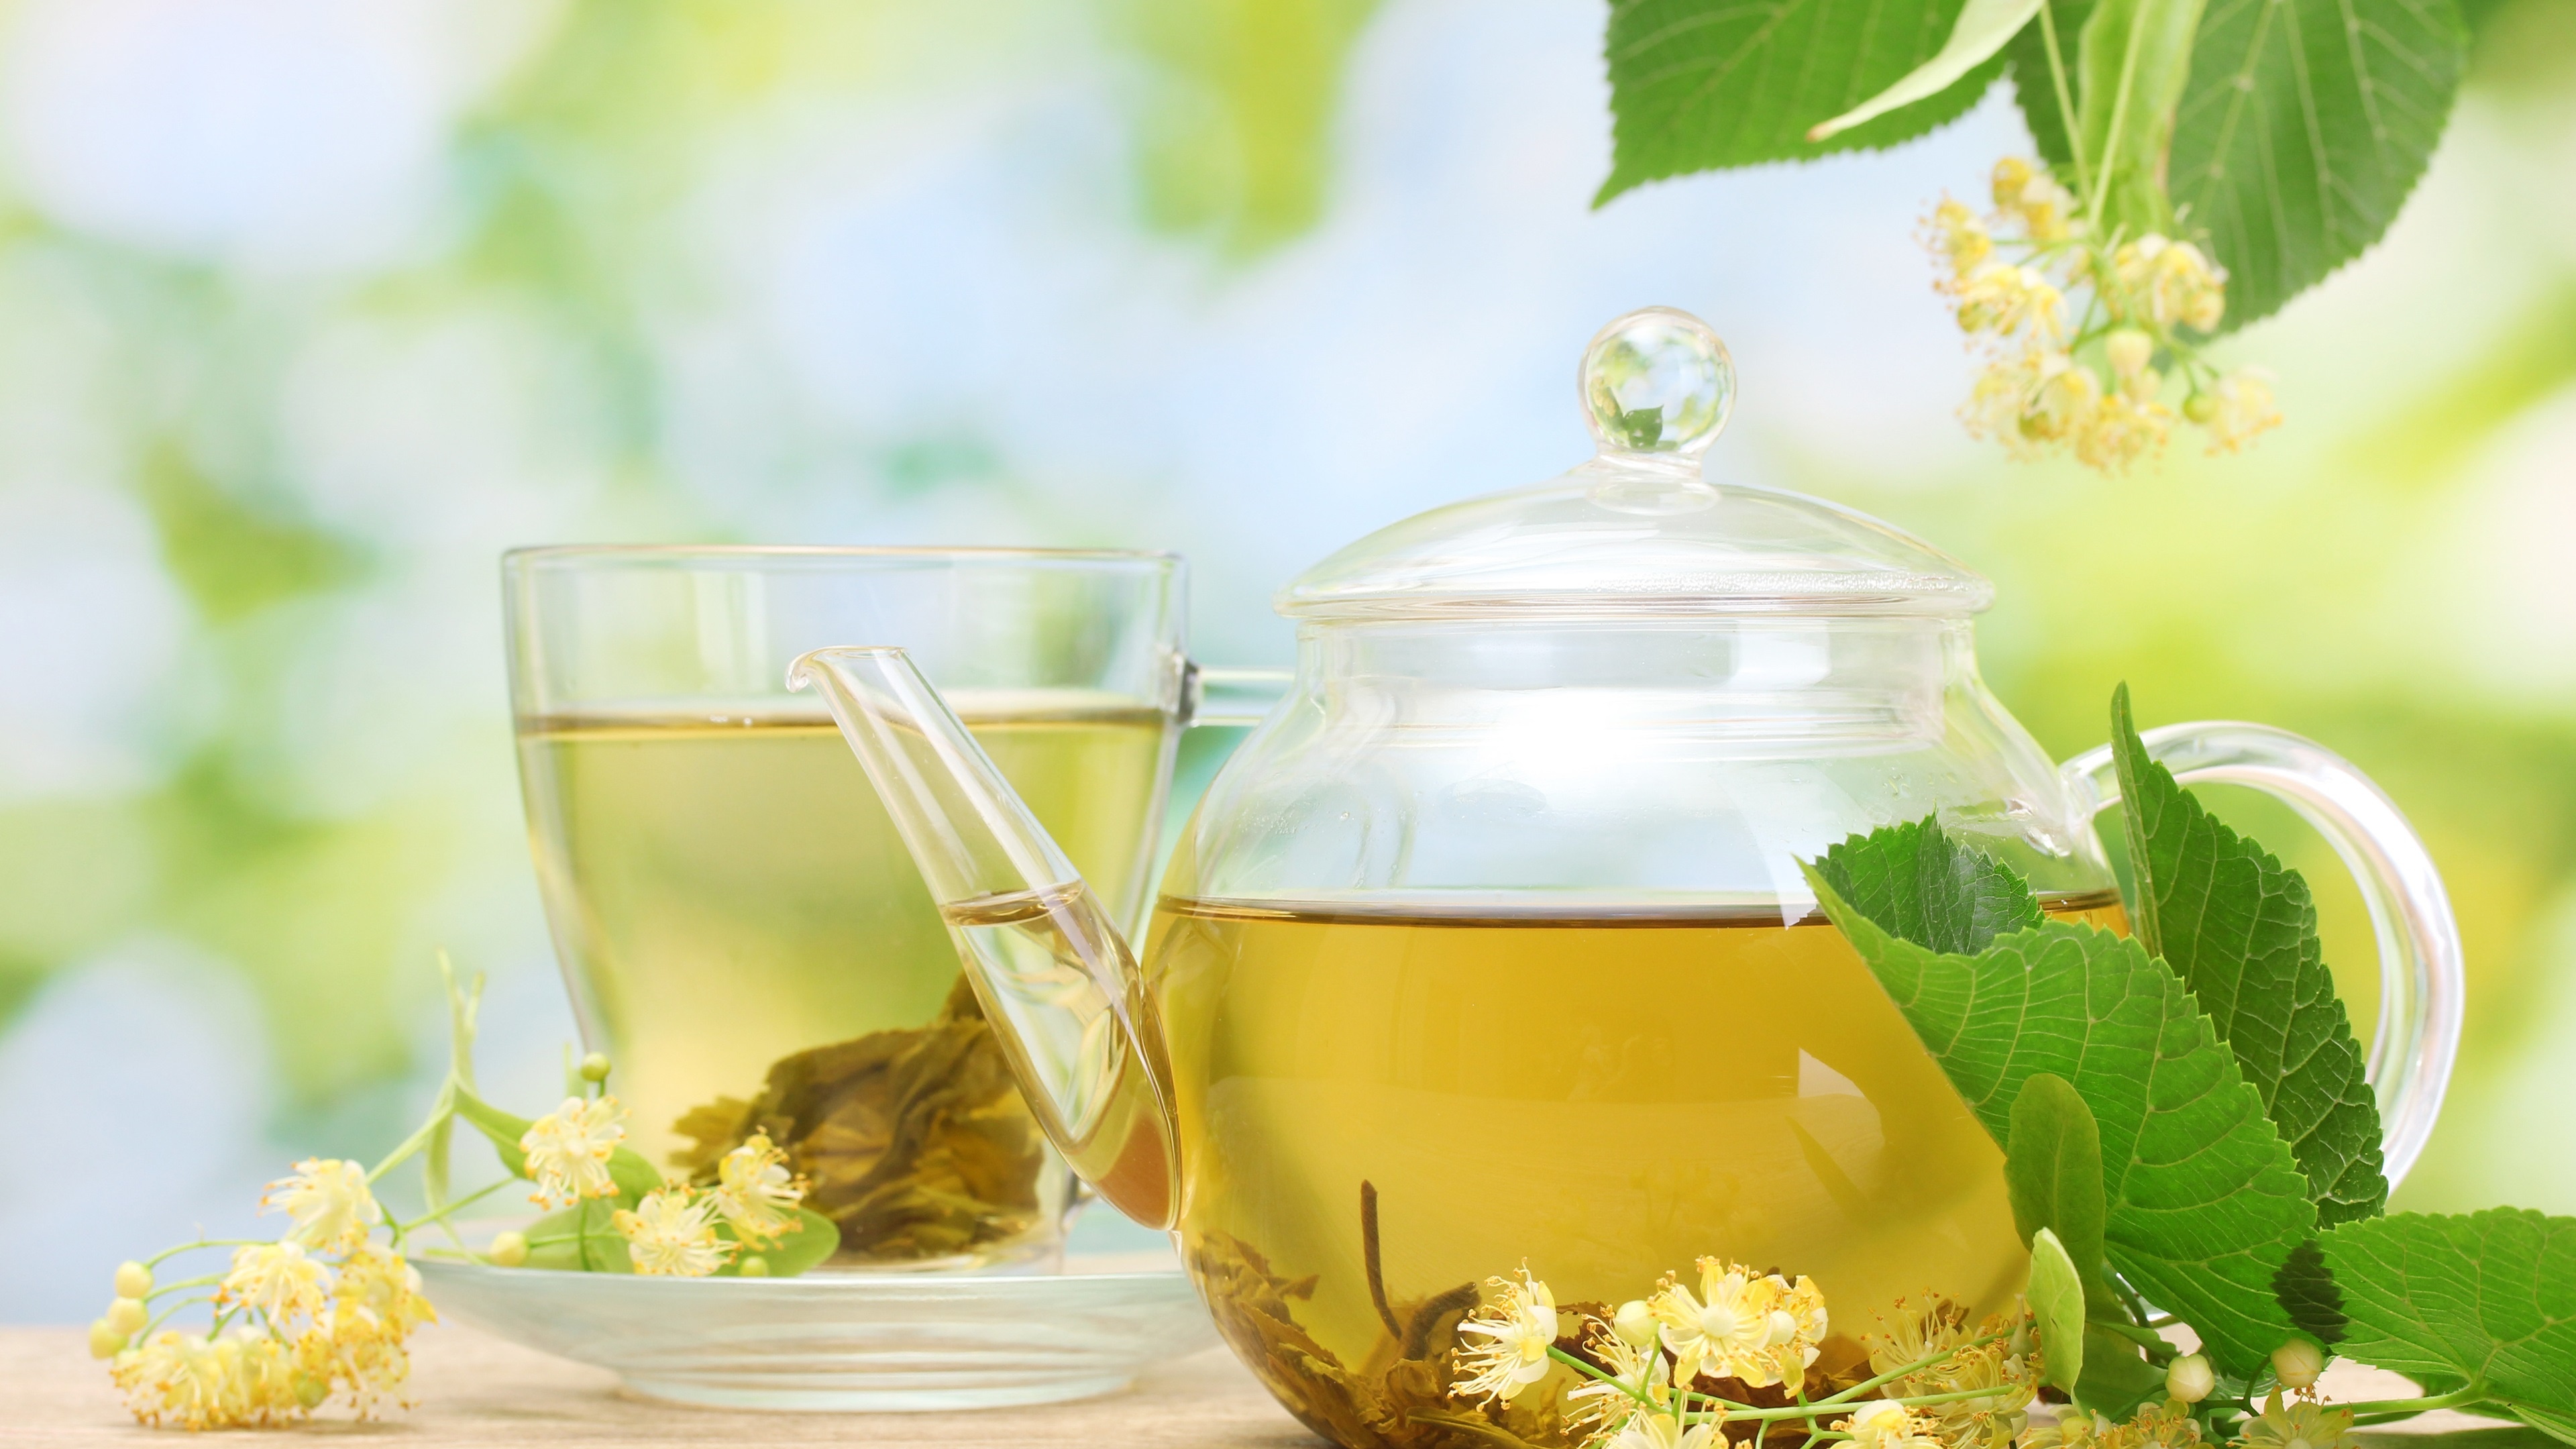 Jasmine tea teapot, Floral drink, Saucer and cup, Delicate blend, 3840x2160 4K Desktop